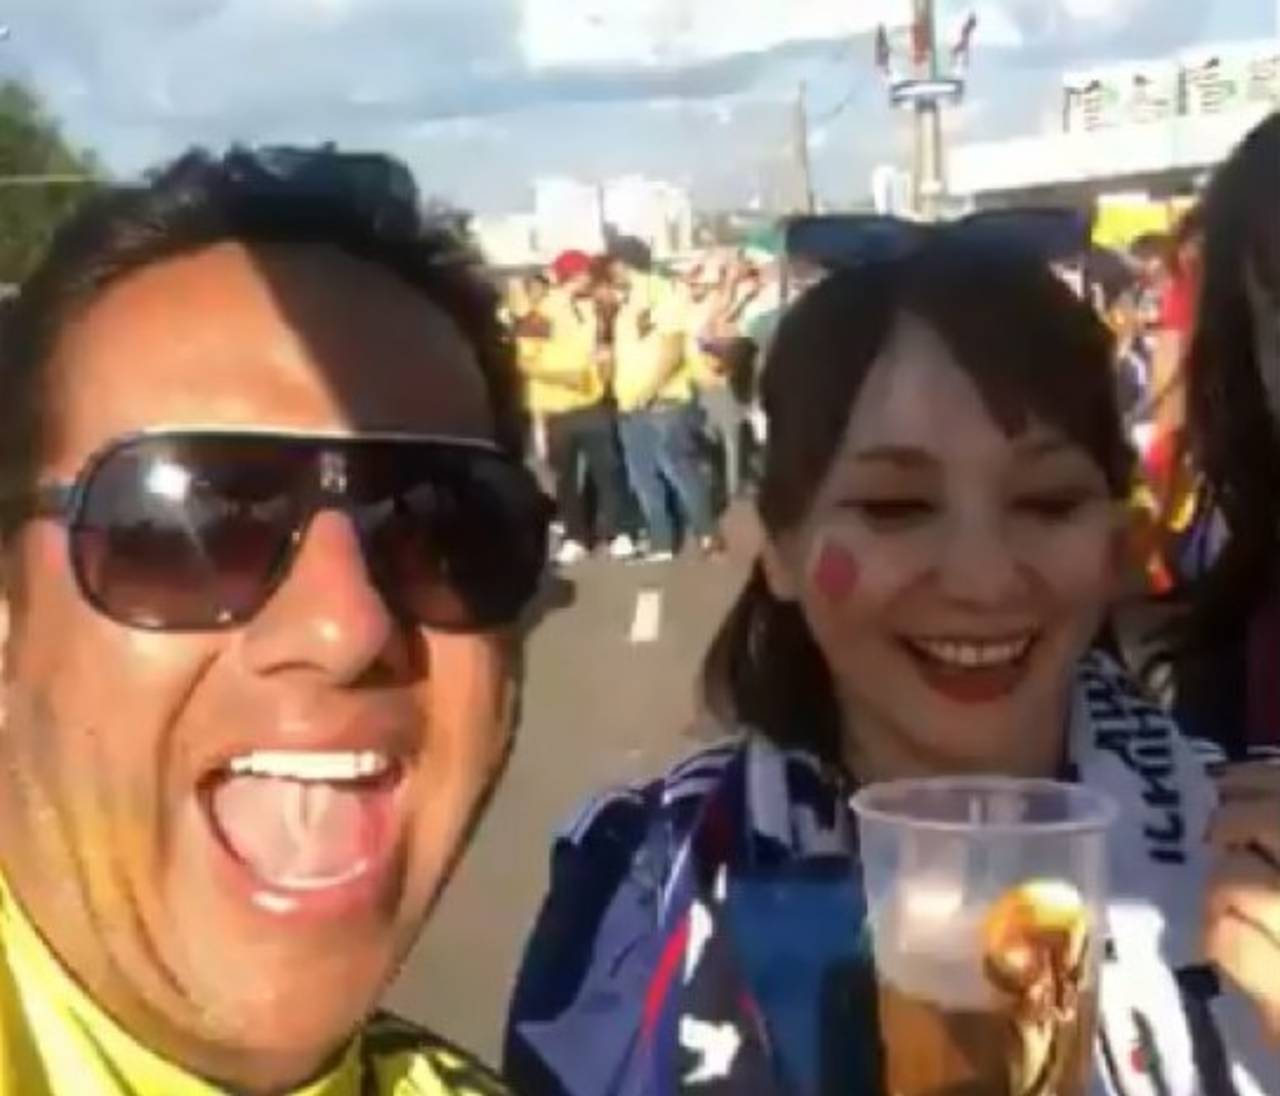 Al término del juego, un fanático colombiano aprovechó que las japonesas no hablaban español y las instó a repetir frases denigrantes. Polémico video genera escándalo